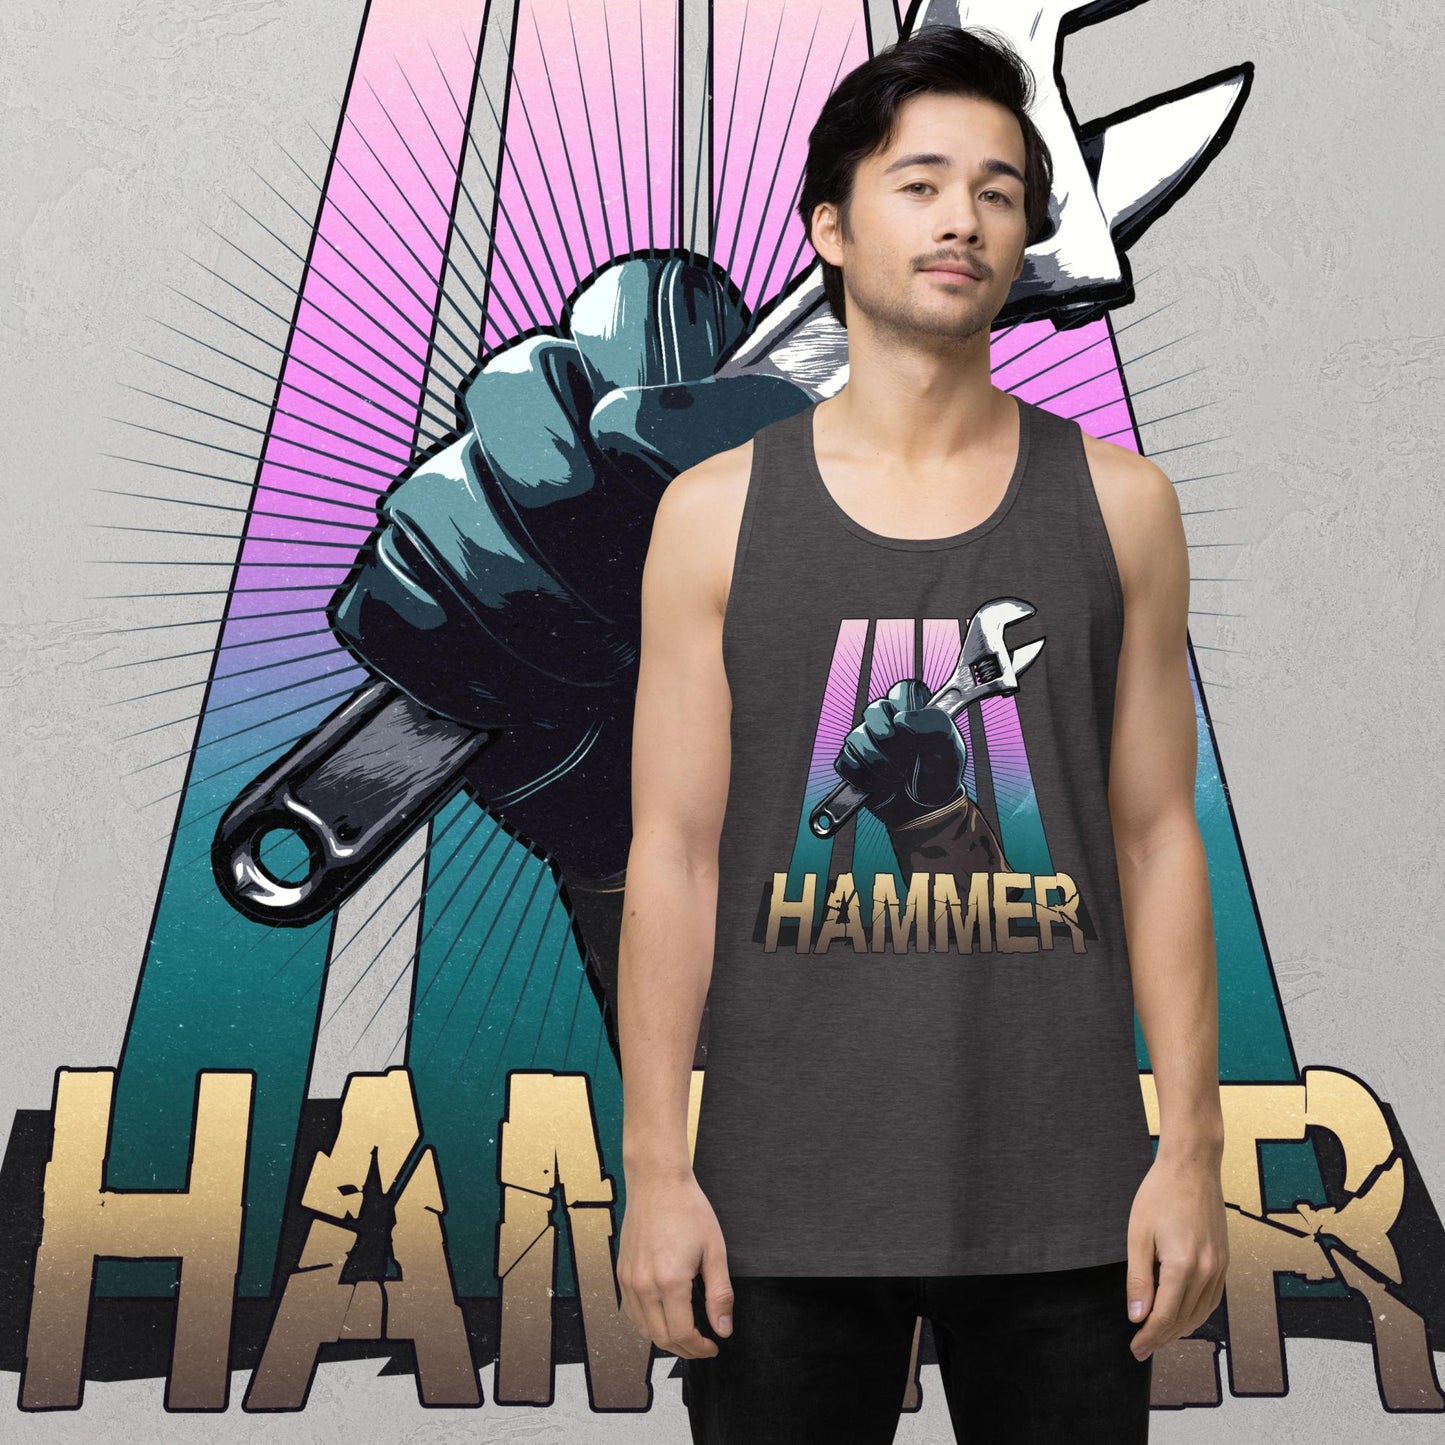 Hammer Tank